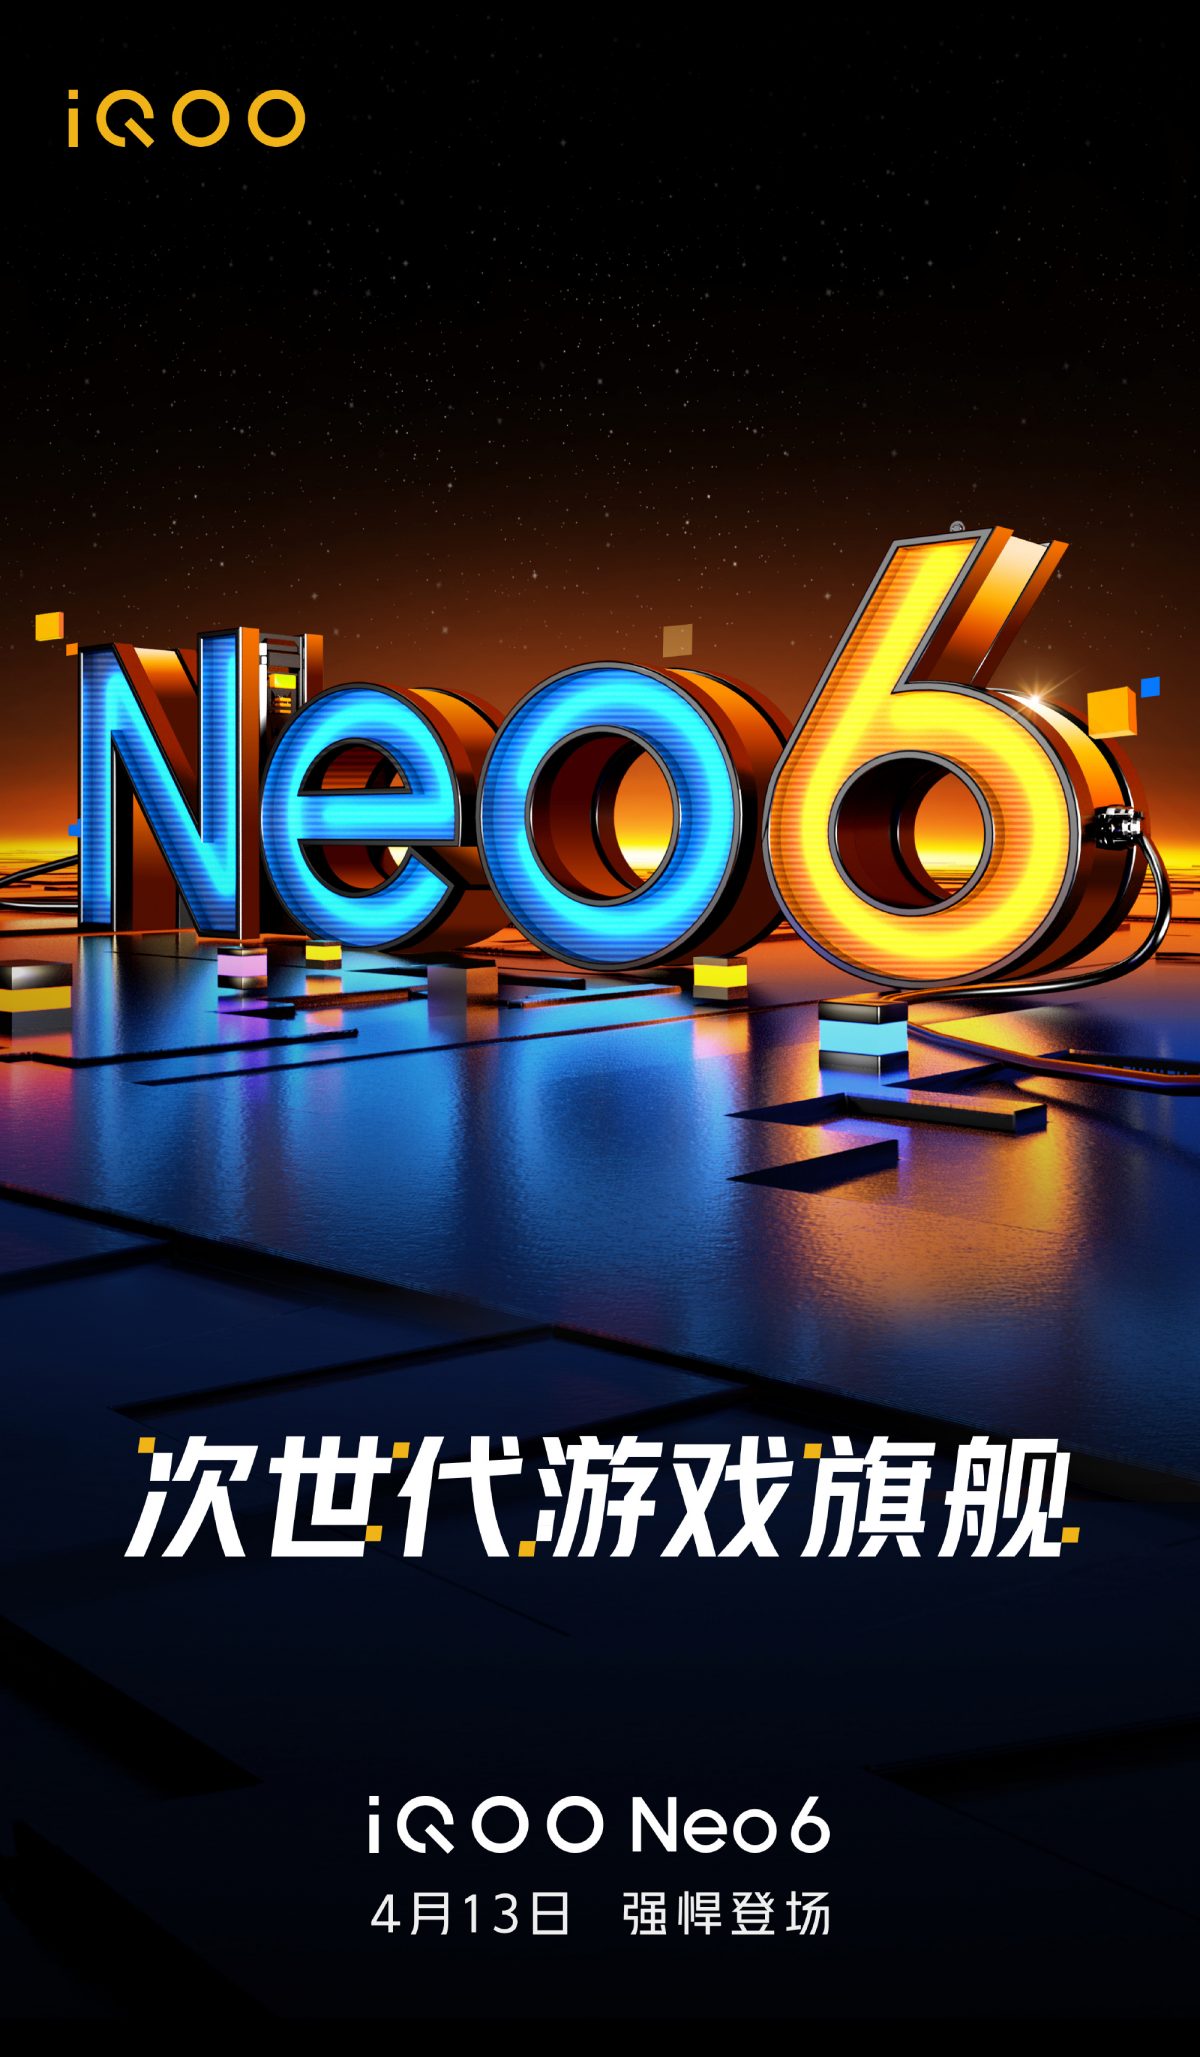 data premiery IQOO Neo 6 cena specyfikacja techniczna